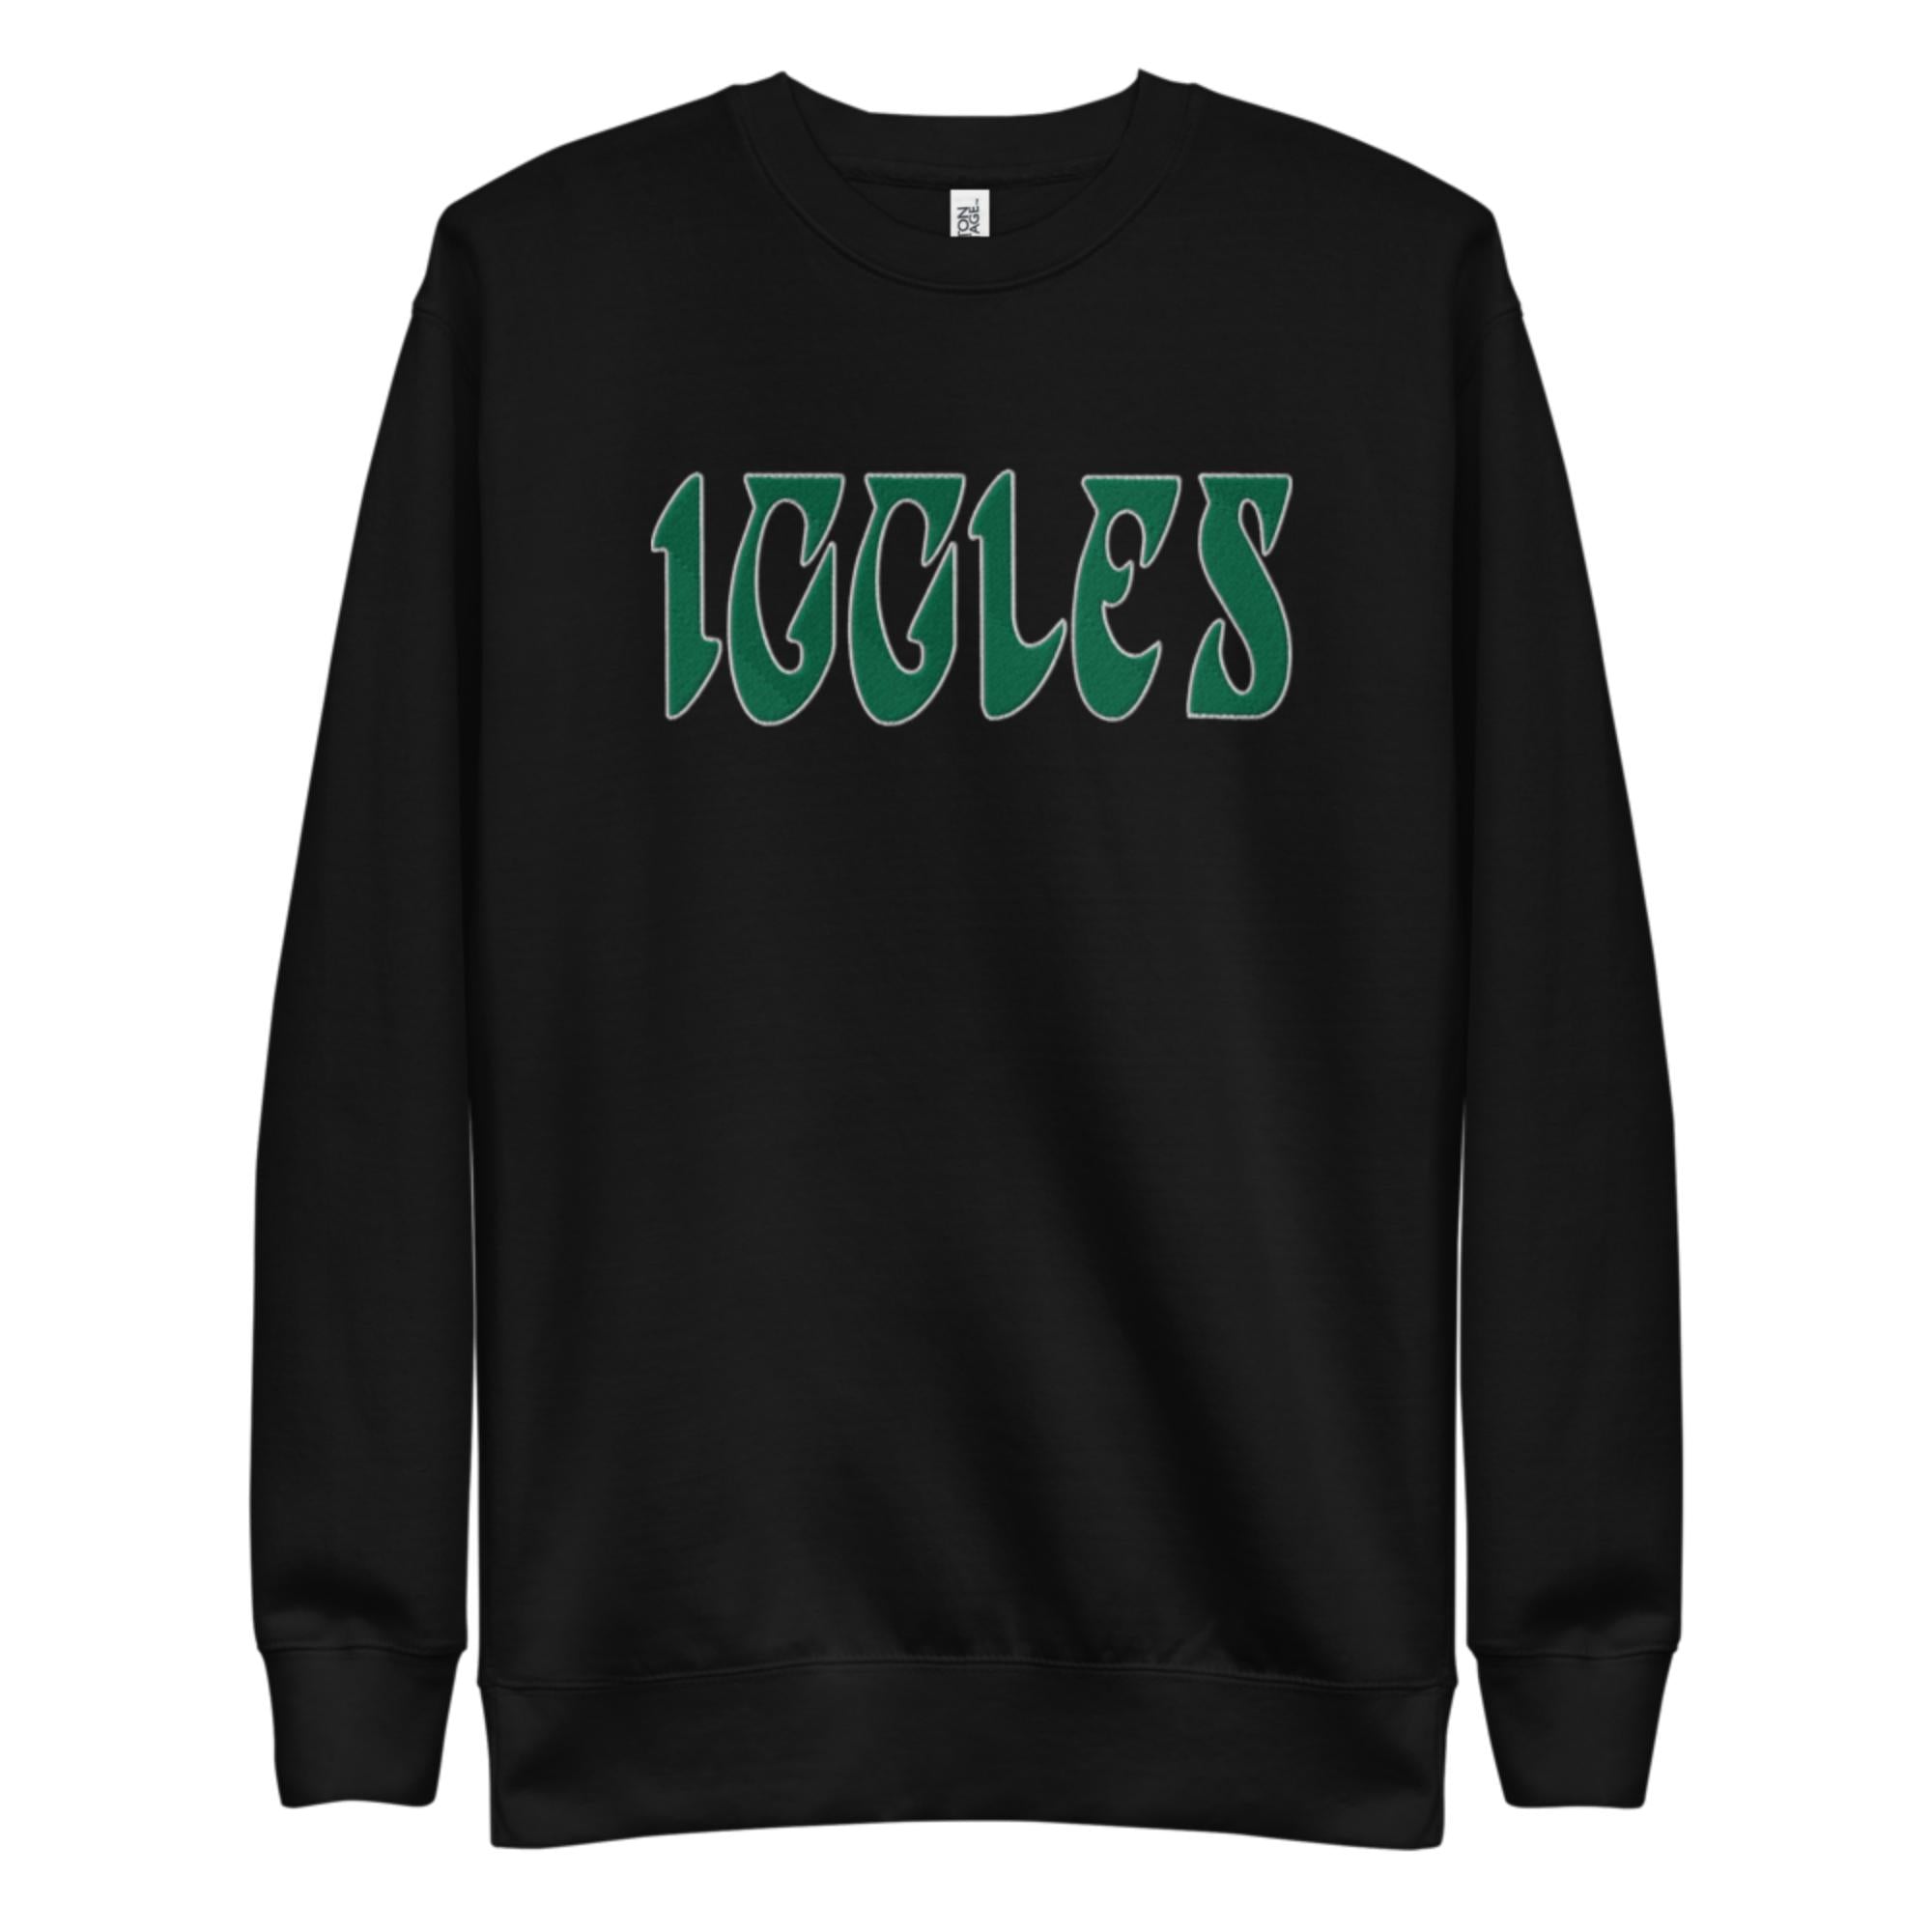 "Iggles" Embroidered Sweatshirt